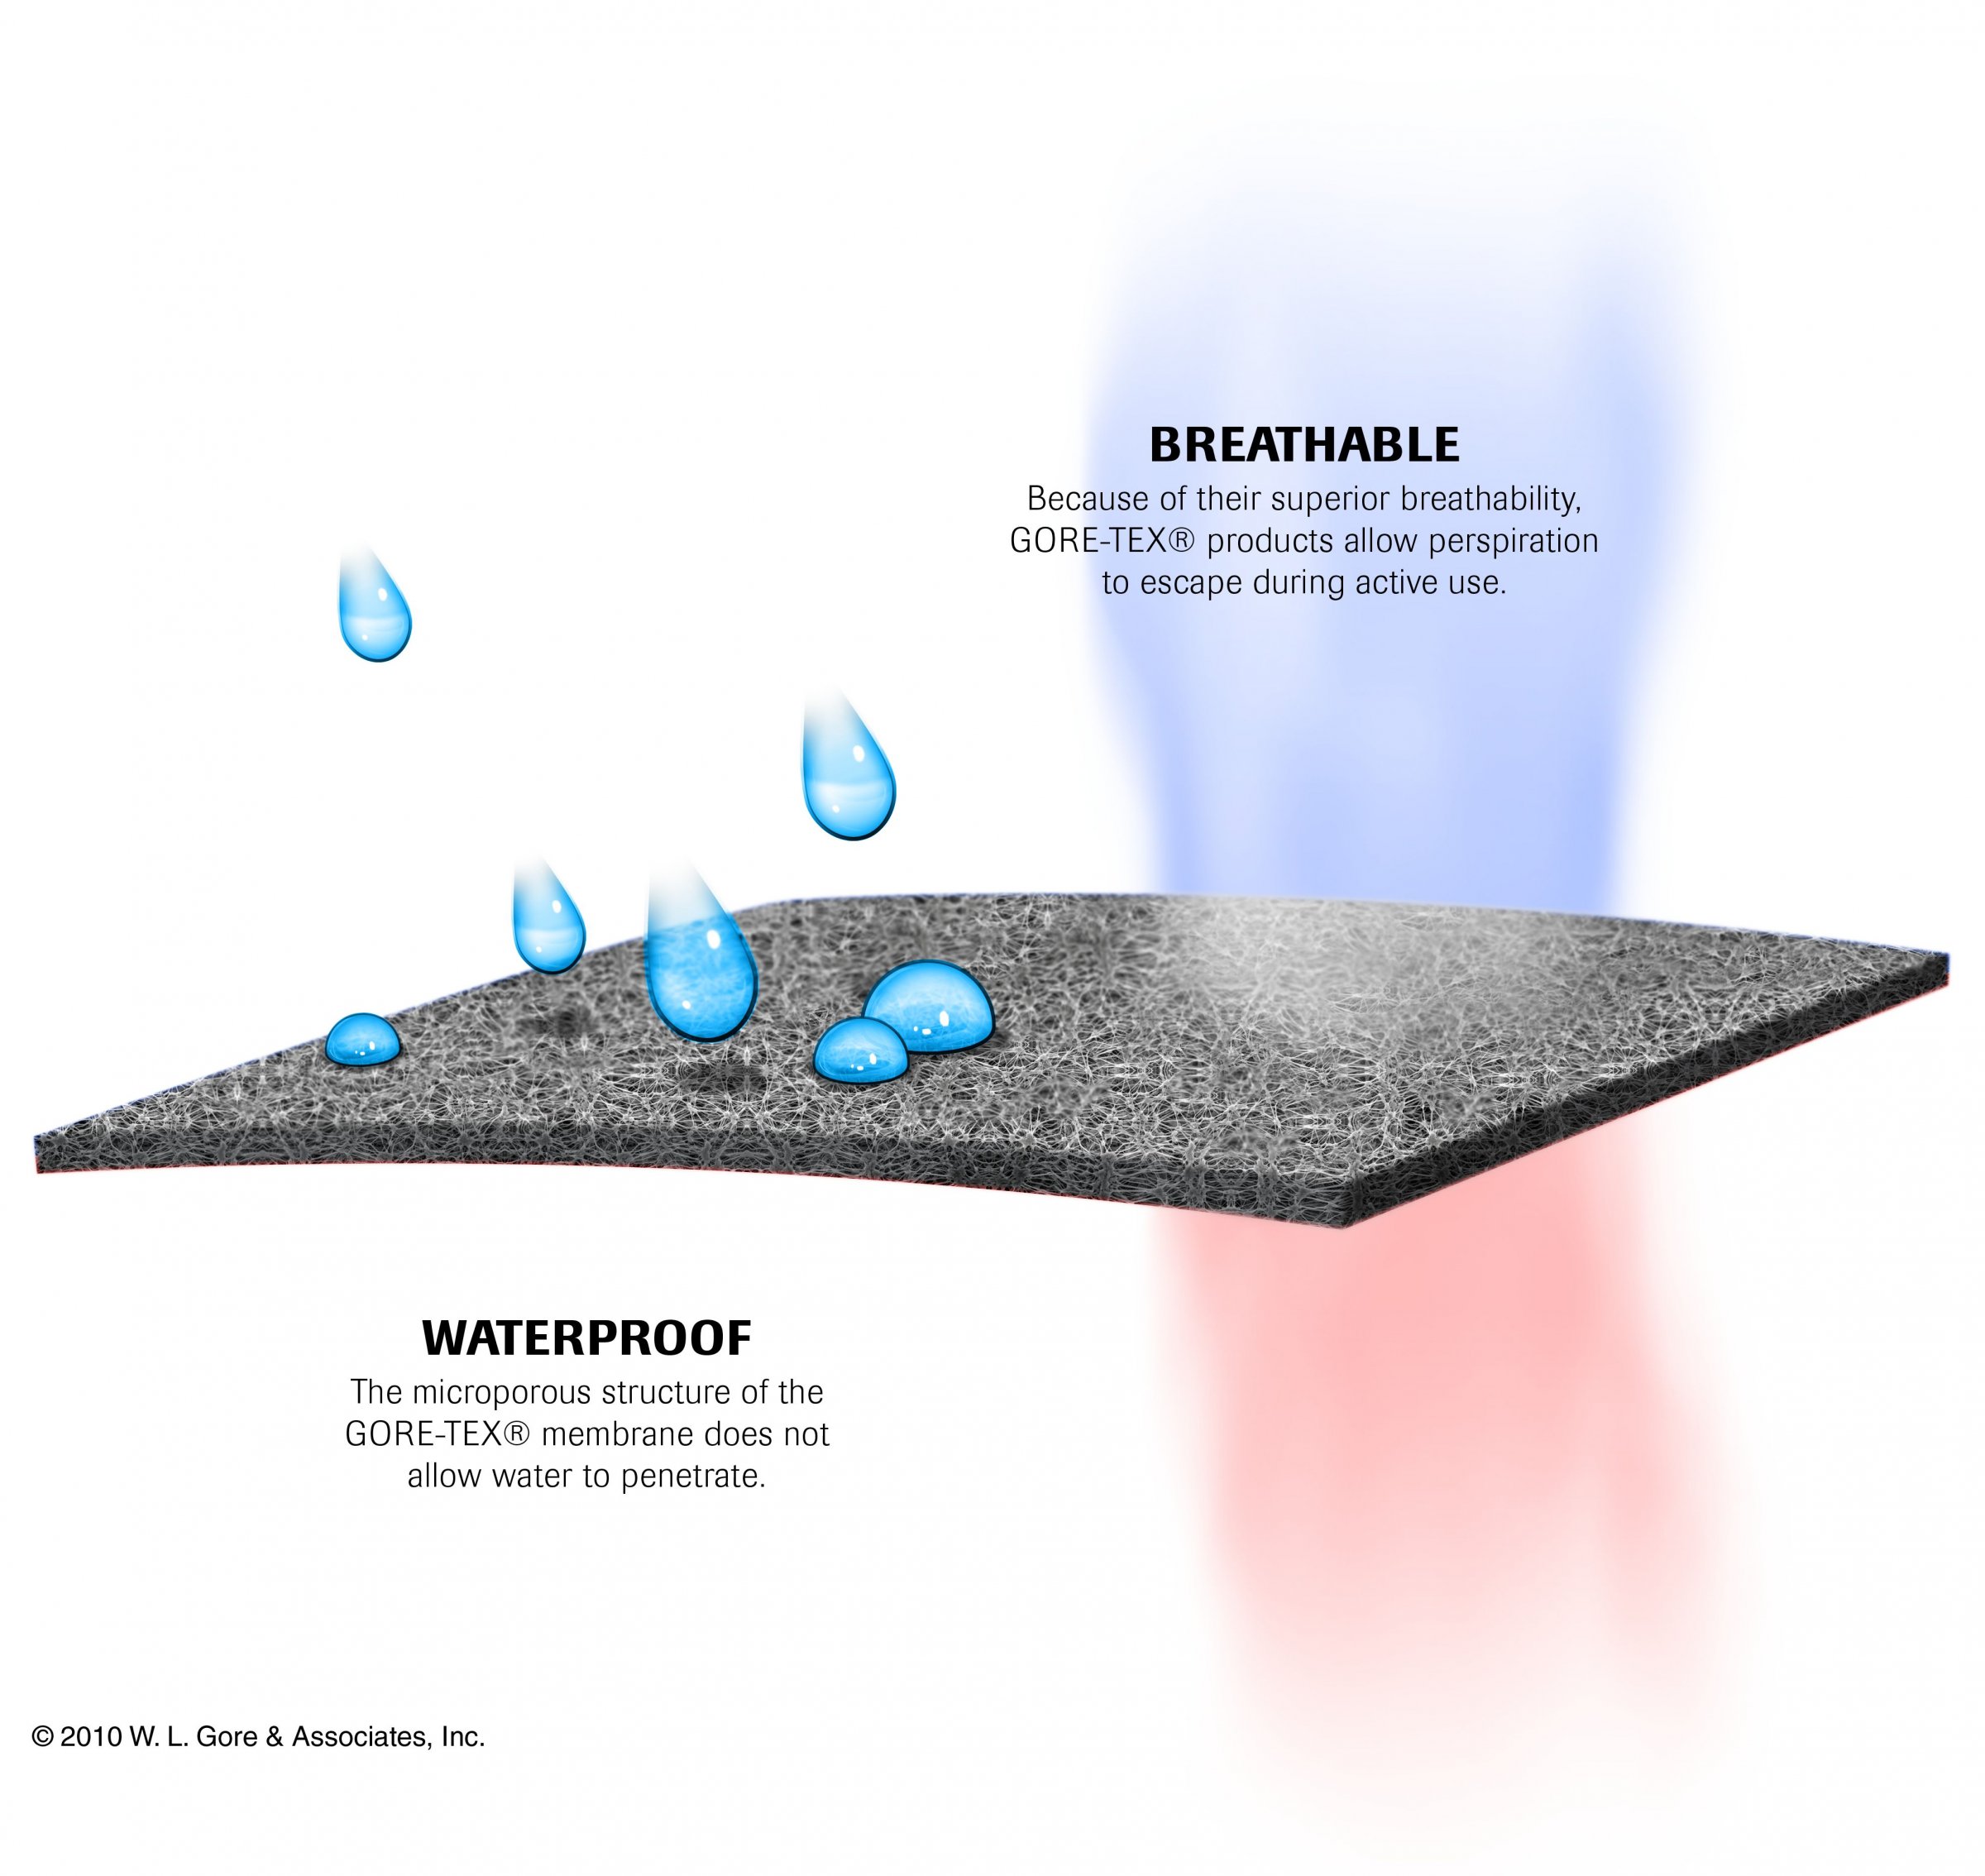 Gore-Tex-membrane breathable waterproof